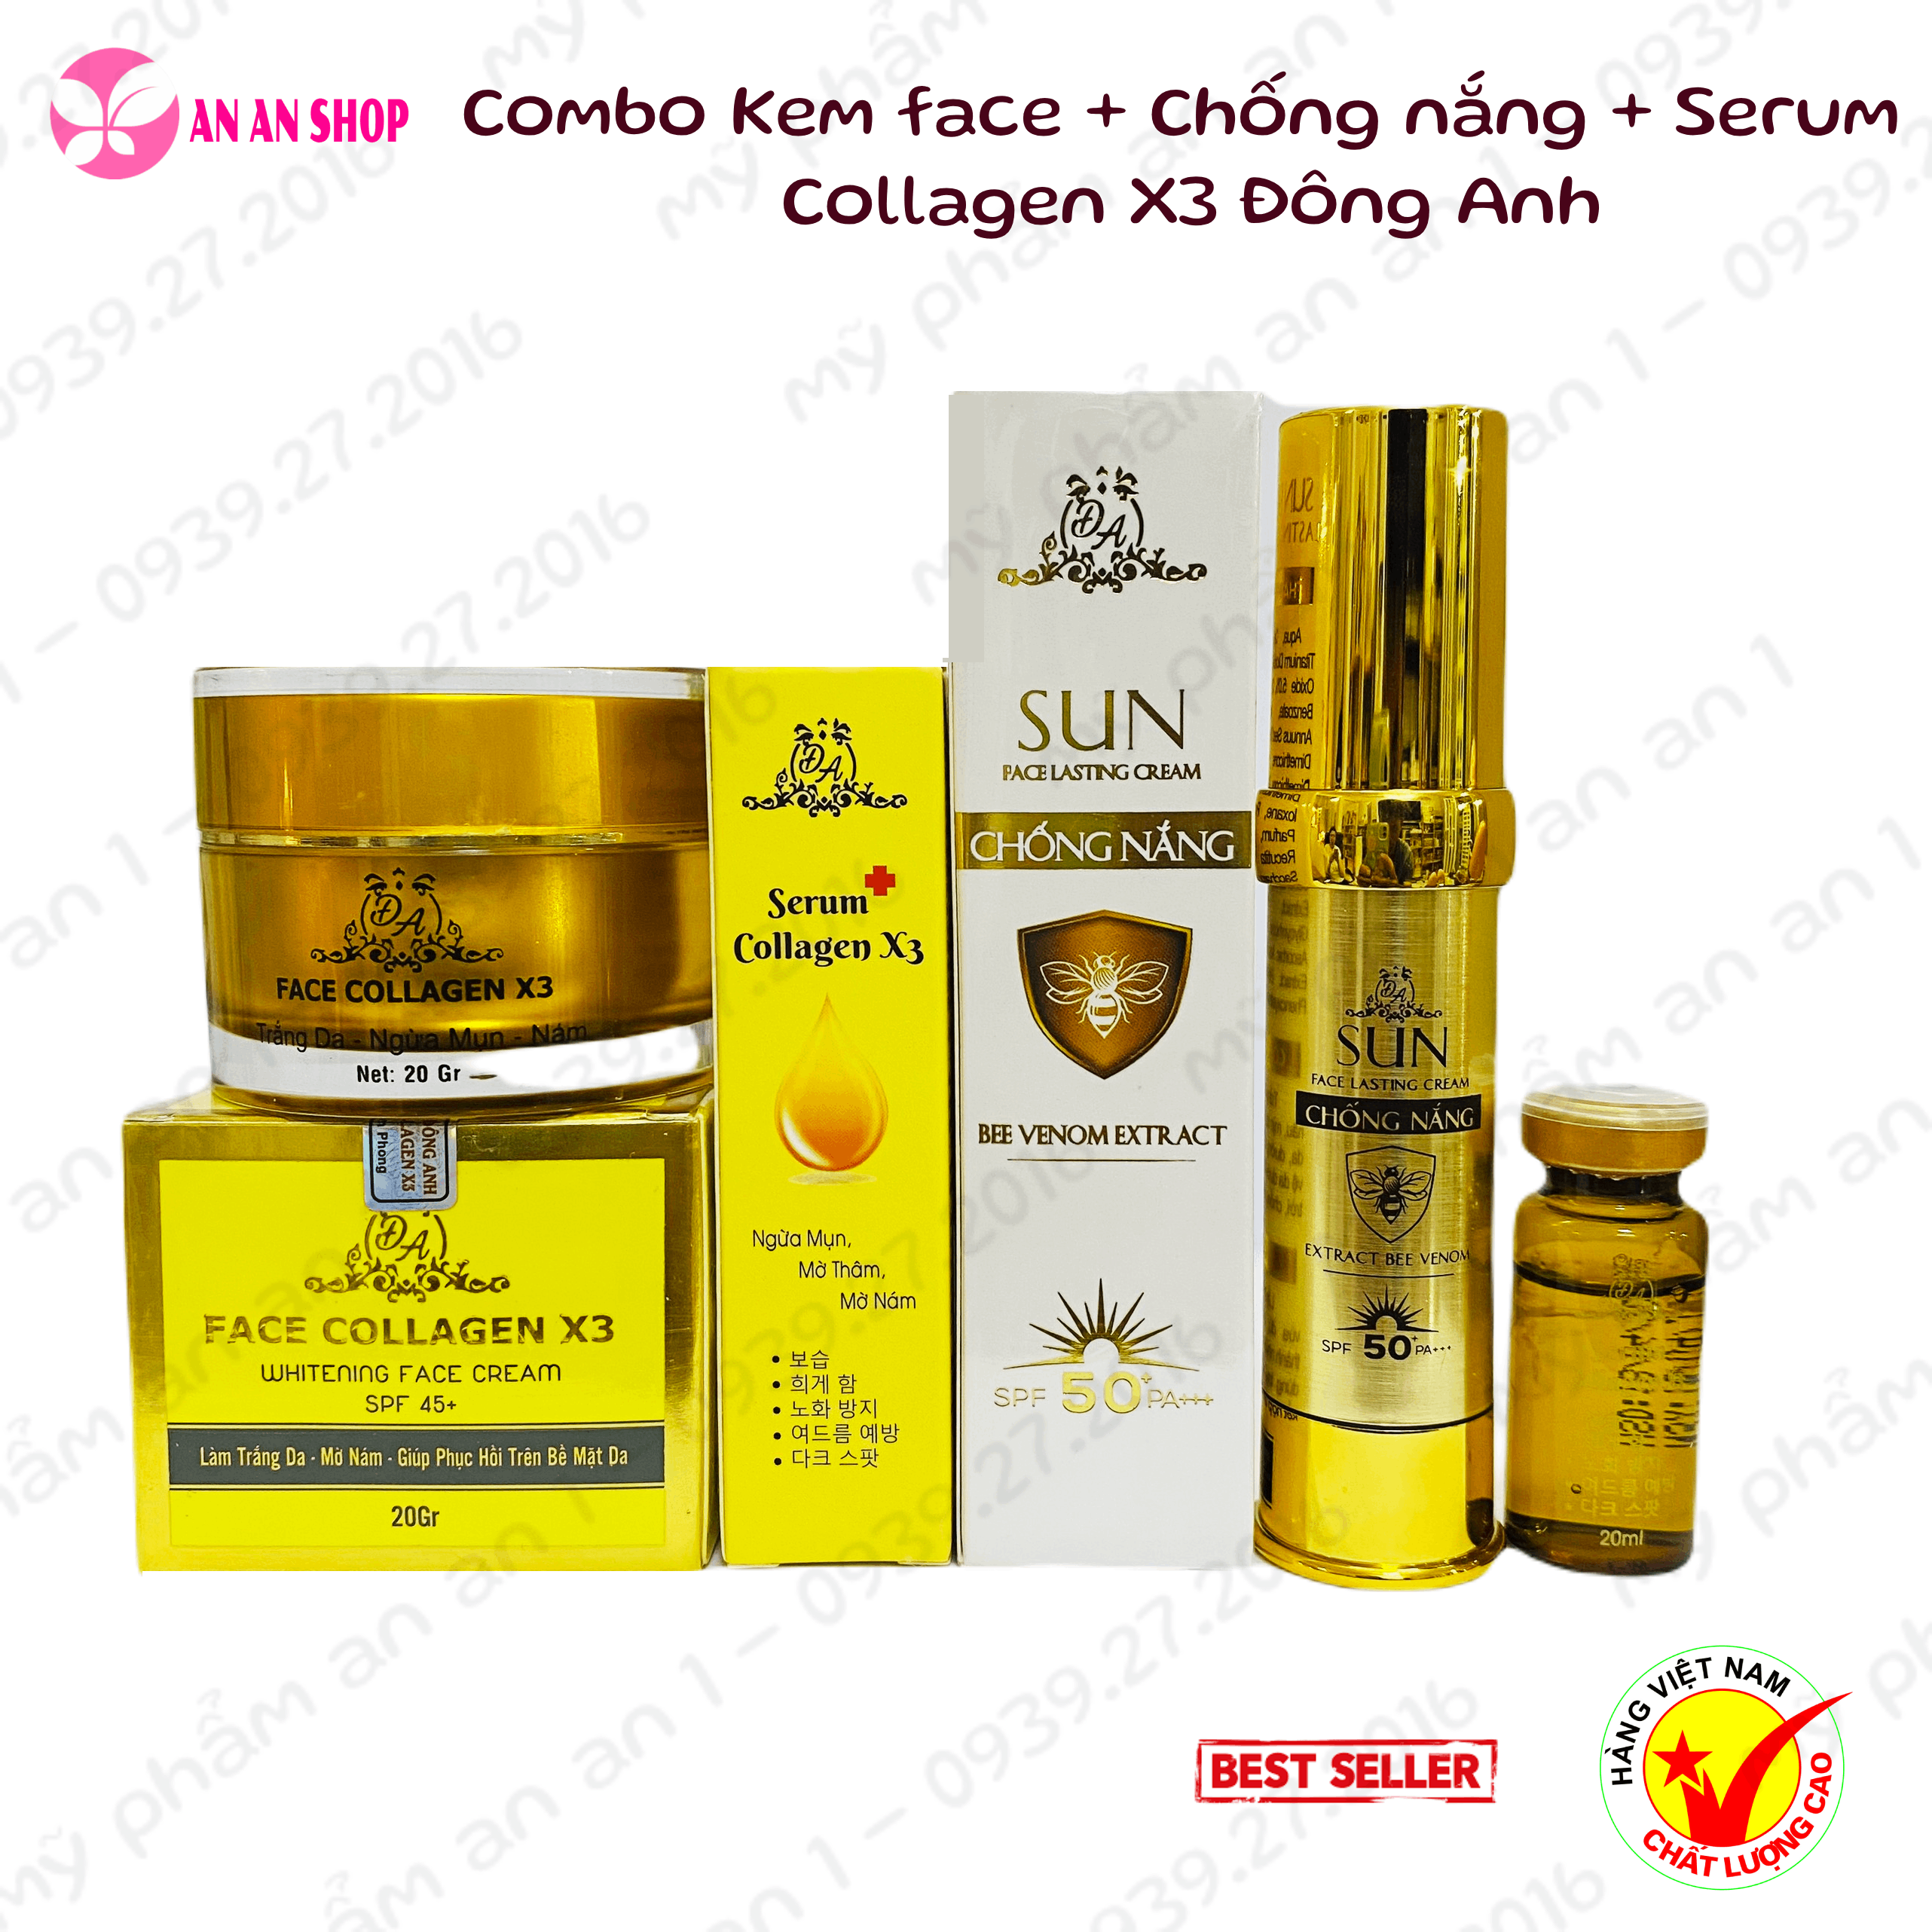 Combo Kem Face collagen X3 + Serum nám X3+ Kem Chống nắng Collagen X3 Đông Anh - Chính hãng